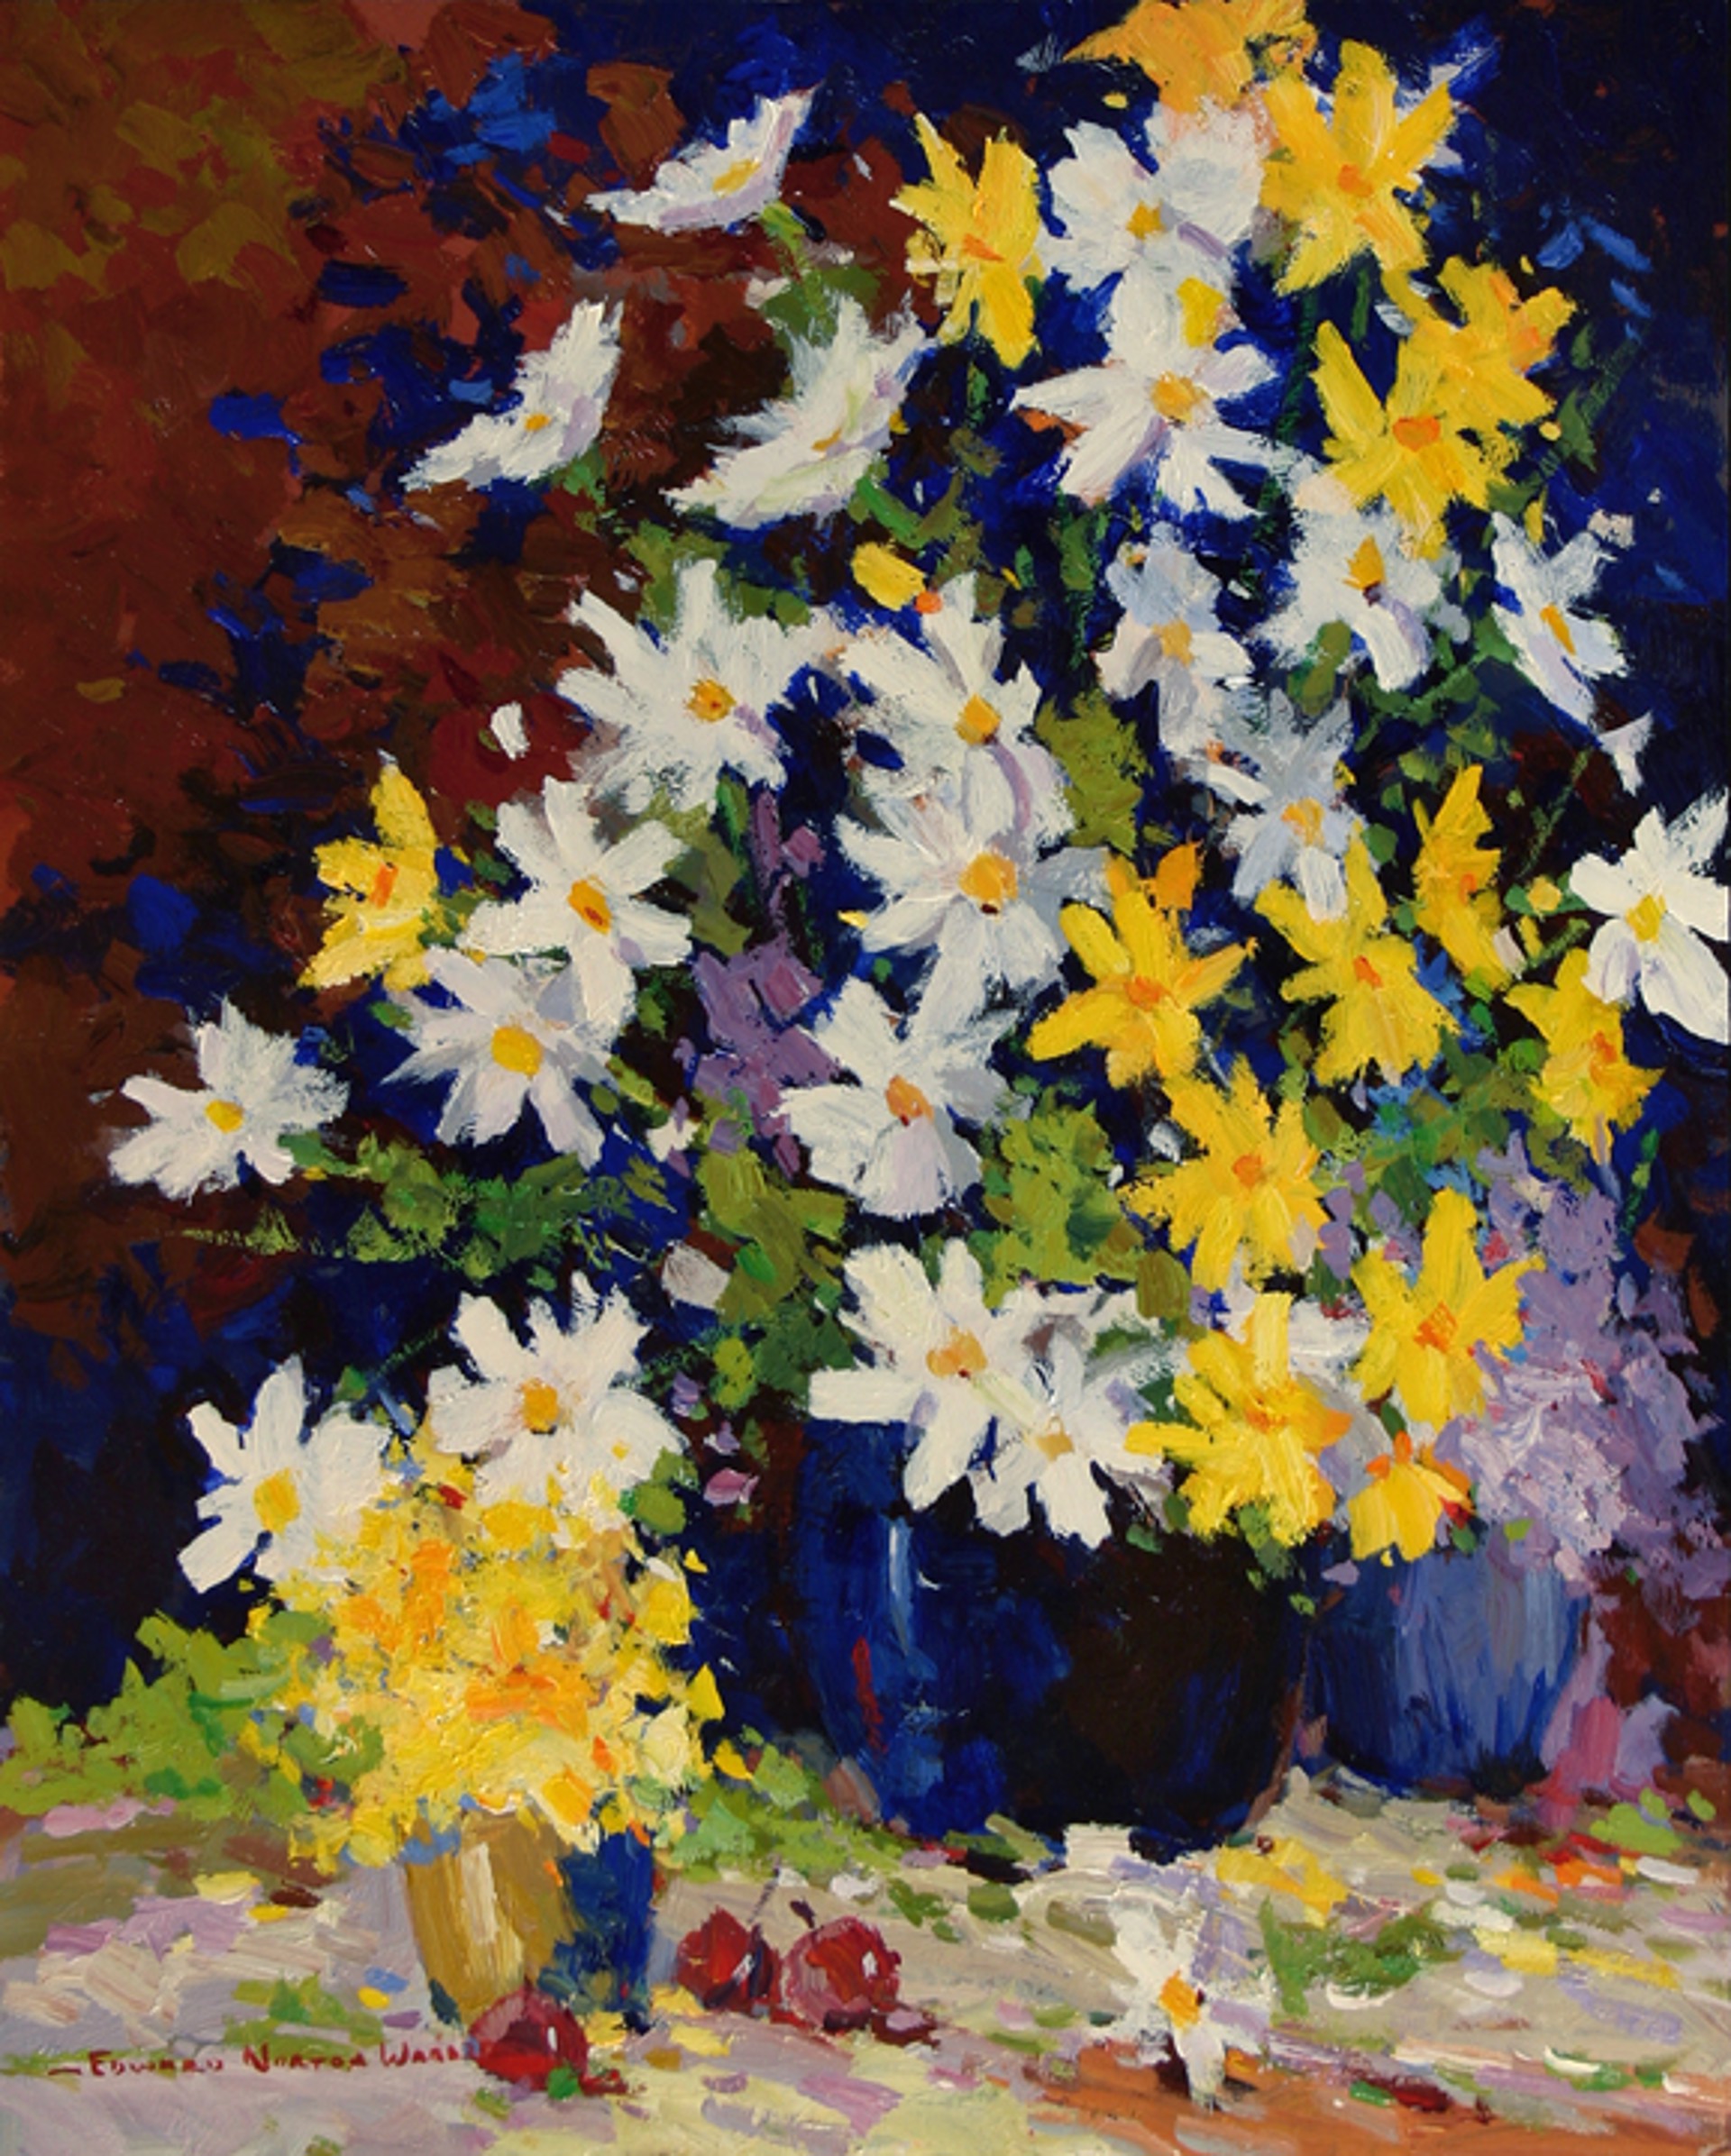 White & Yellow Daisies by Edward Norton Ward